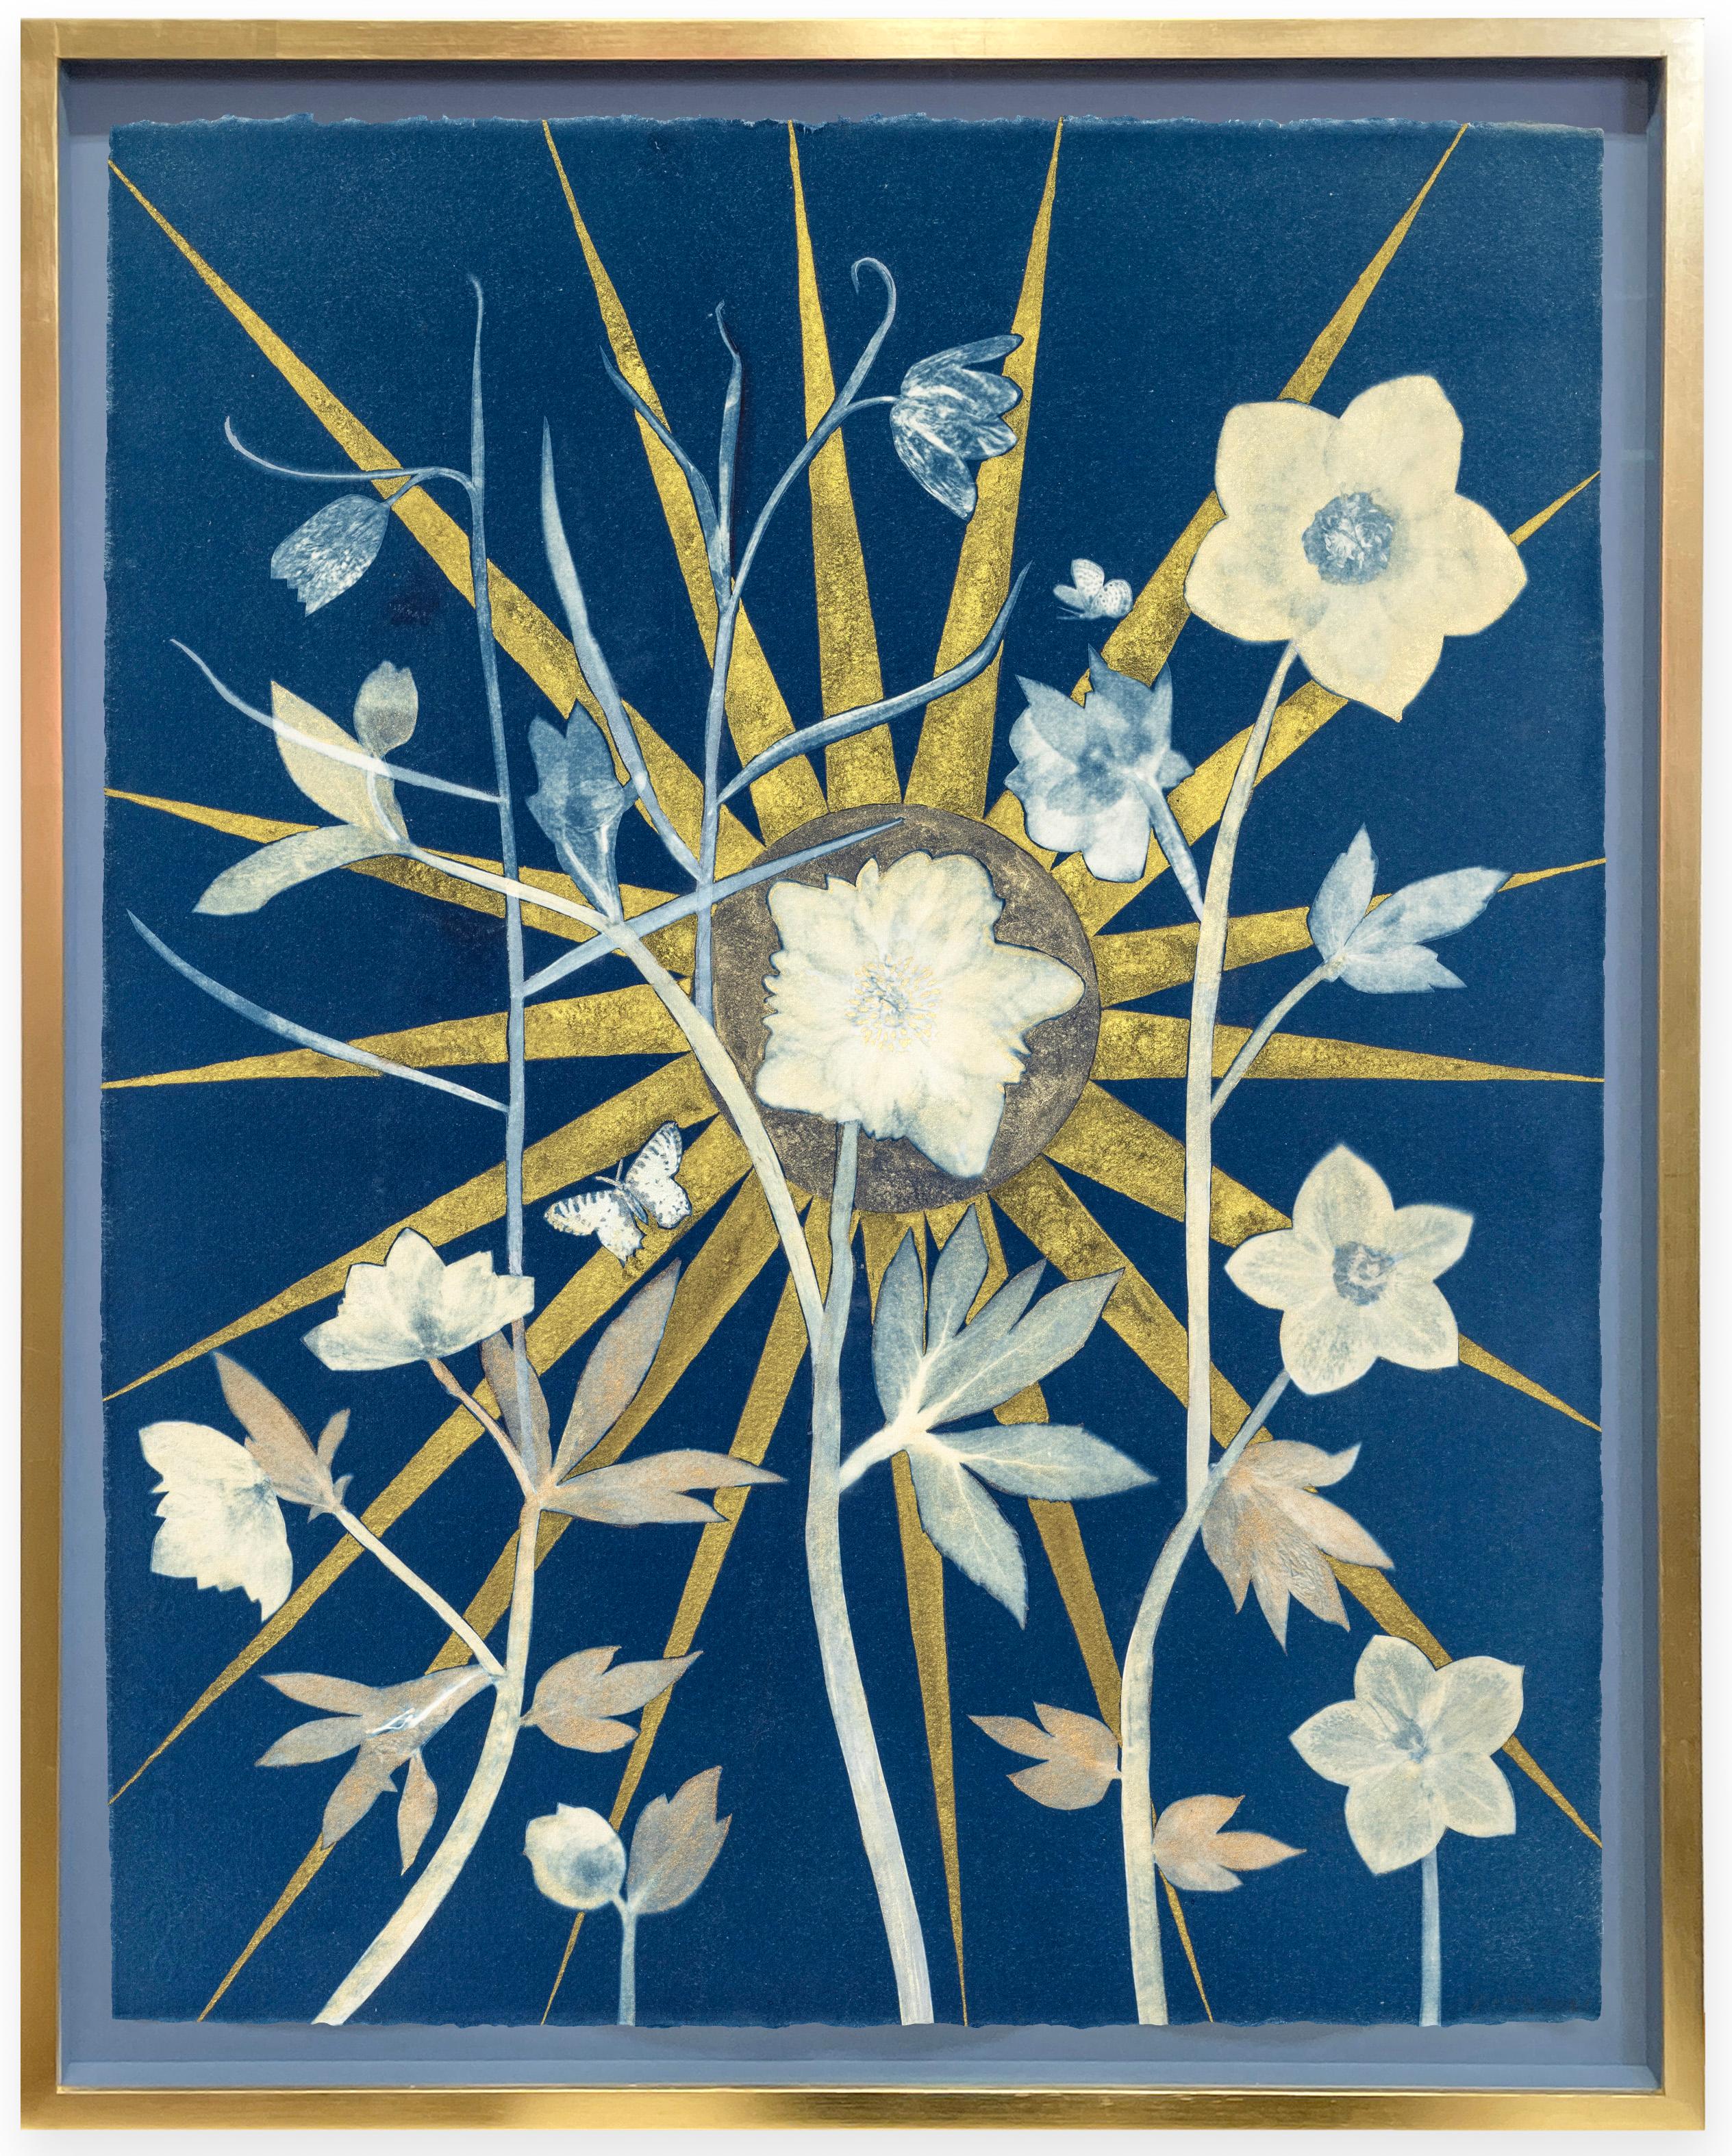 Hellebore, Center Star (Still Life of Golden Sunburst, White Flowers on Indigo)